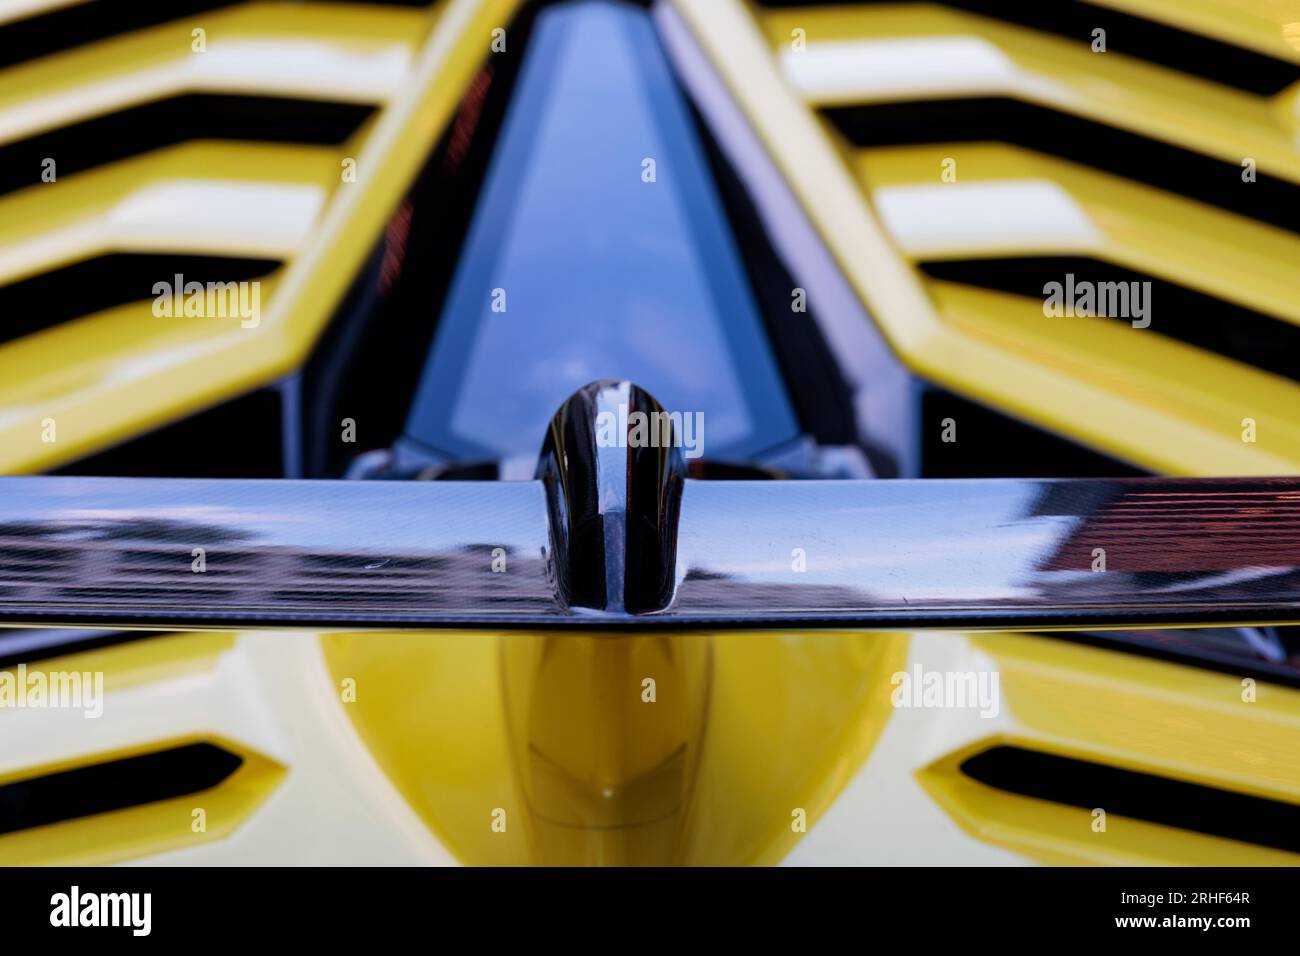 Lamborghini Aventador SVJ rear spoiler Stock Photo